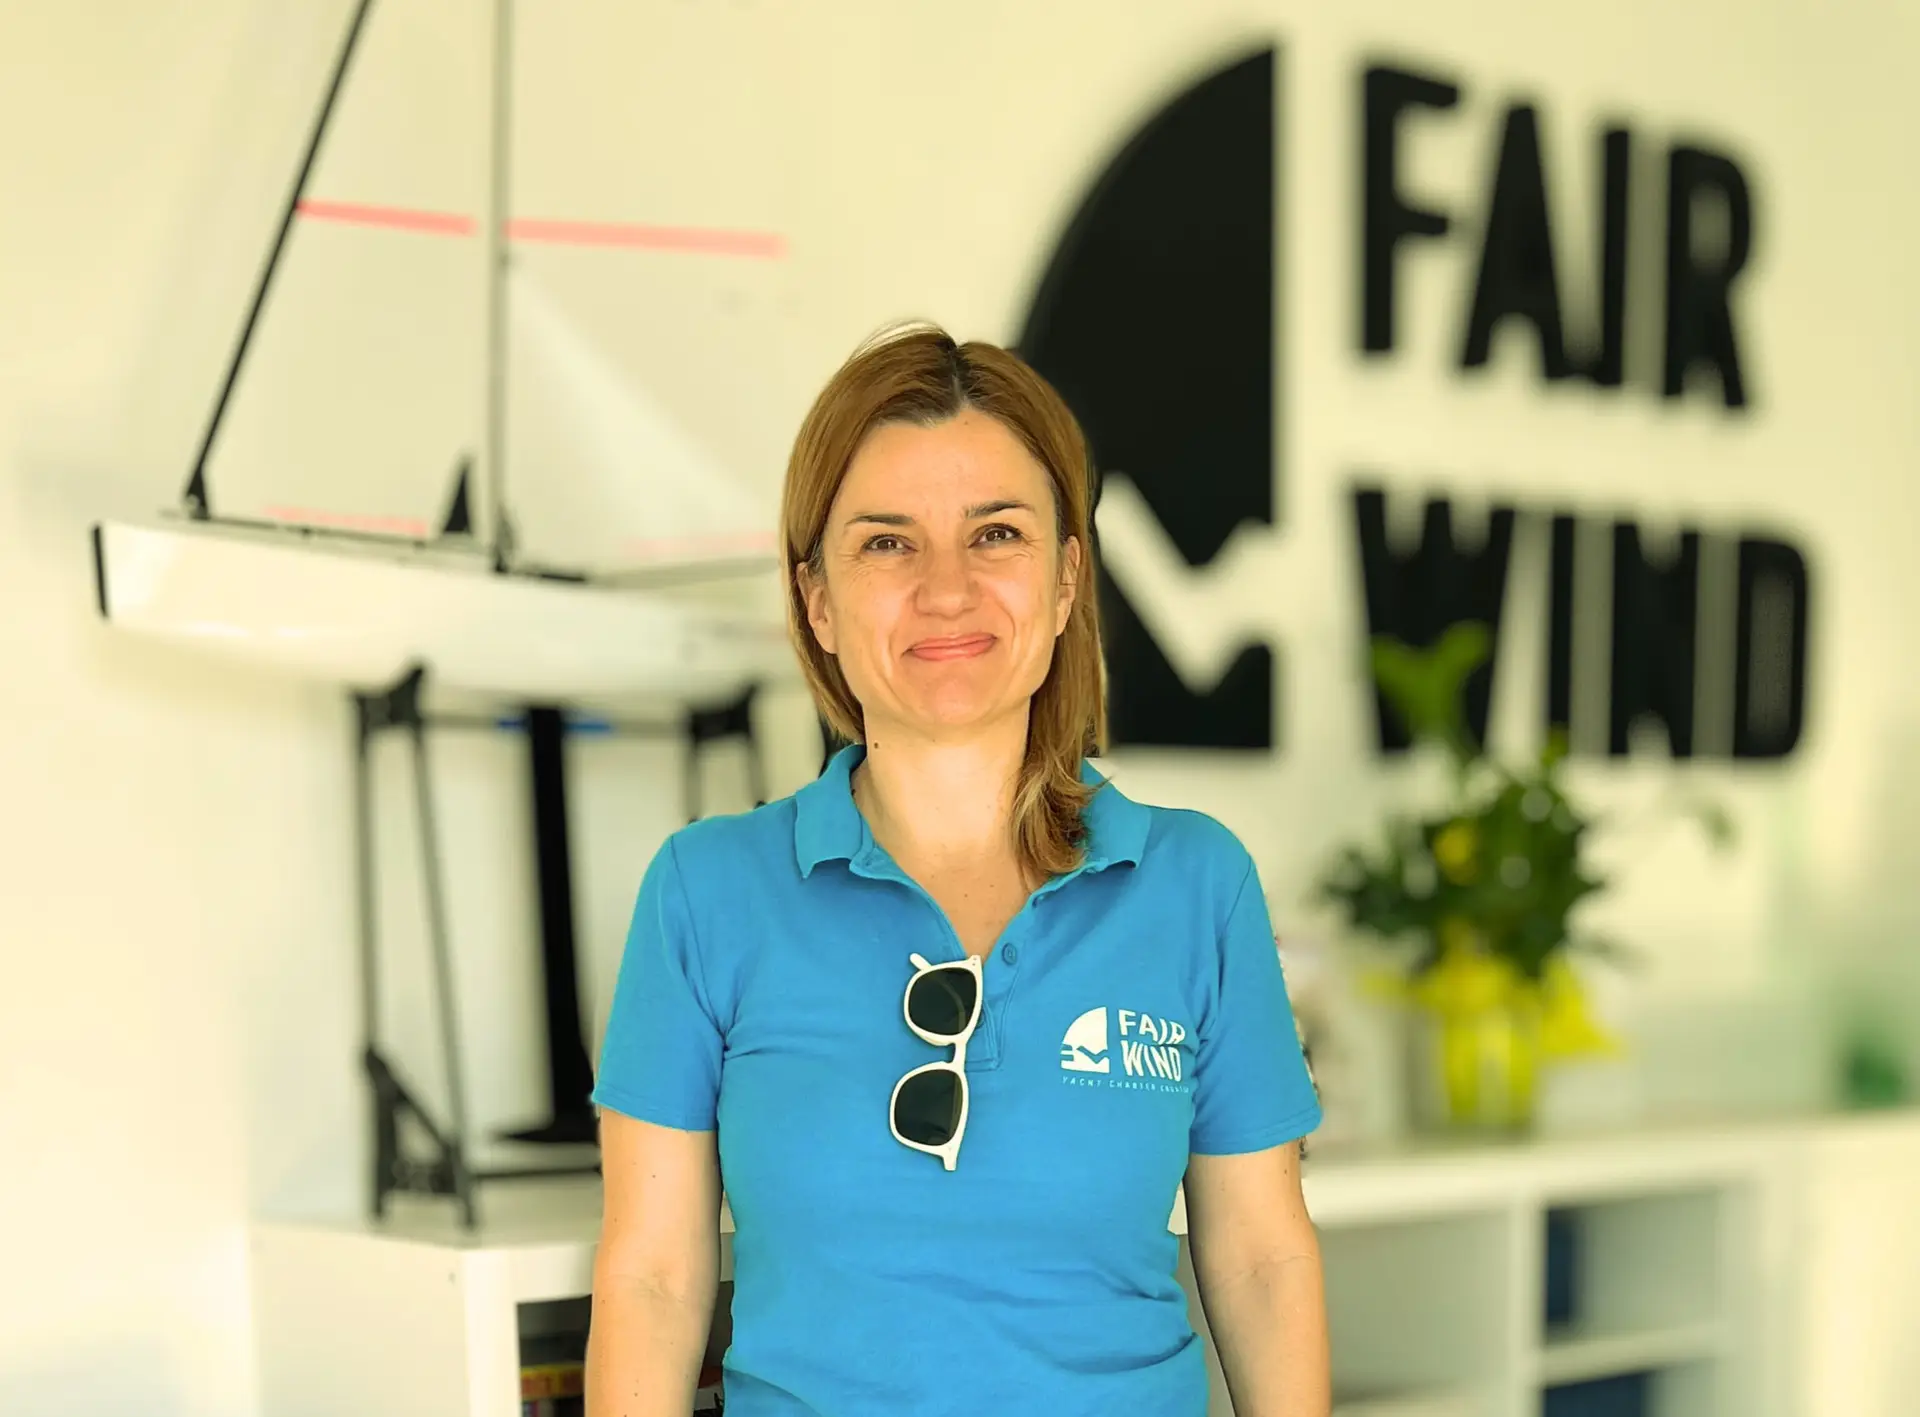 Ivana from Fair Wind charter